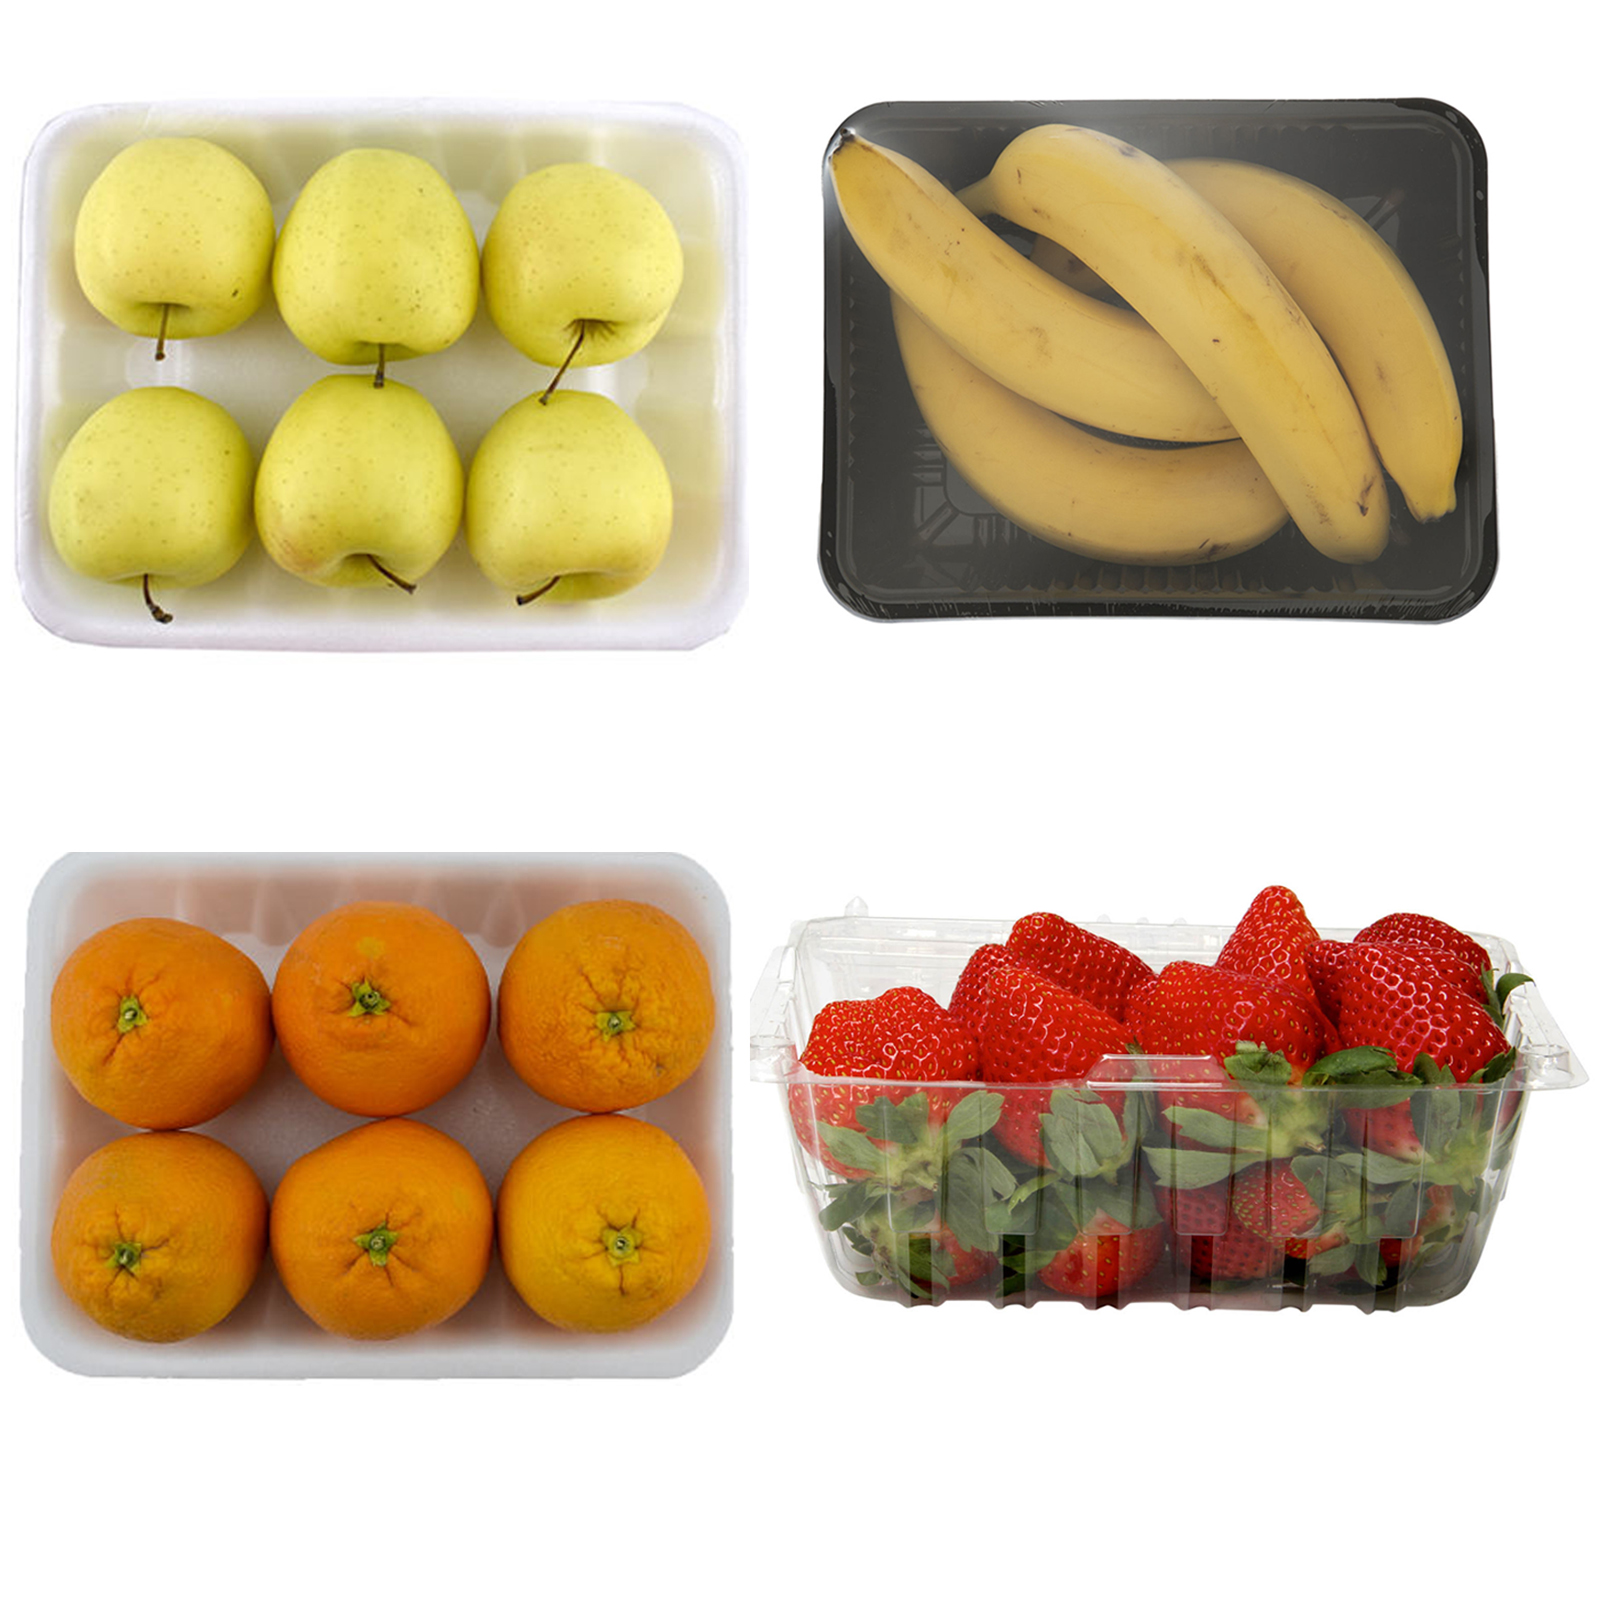 سیب زرد – 1 کیلوگرم و پرتقال تامسون – 1 کیلوگرم و موز – 1 کیلوگرم ...